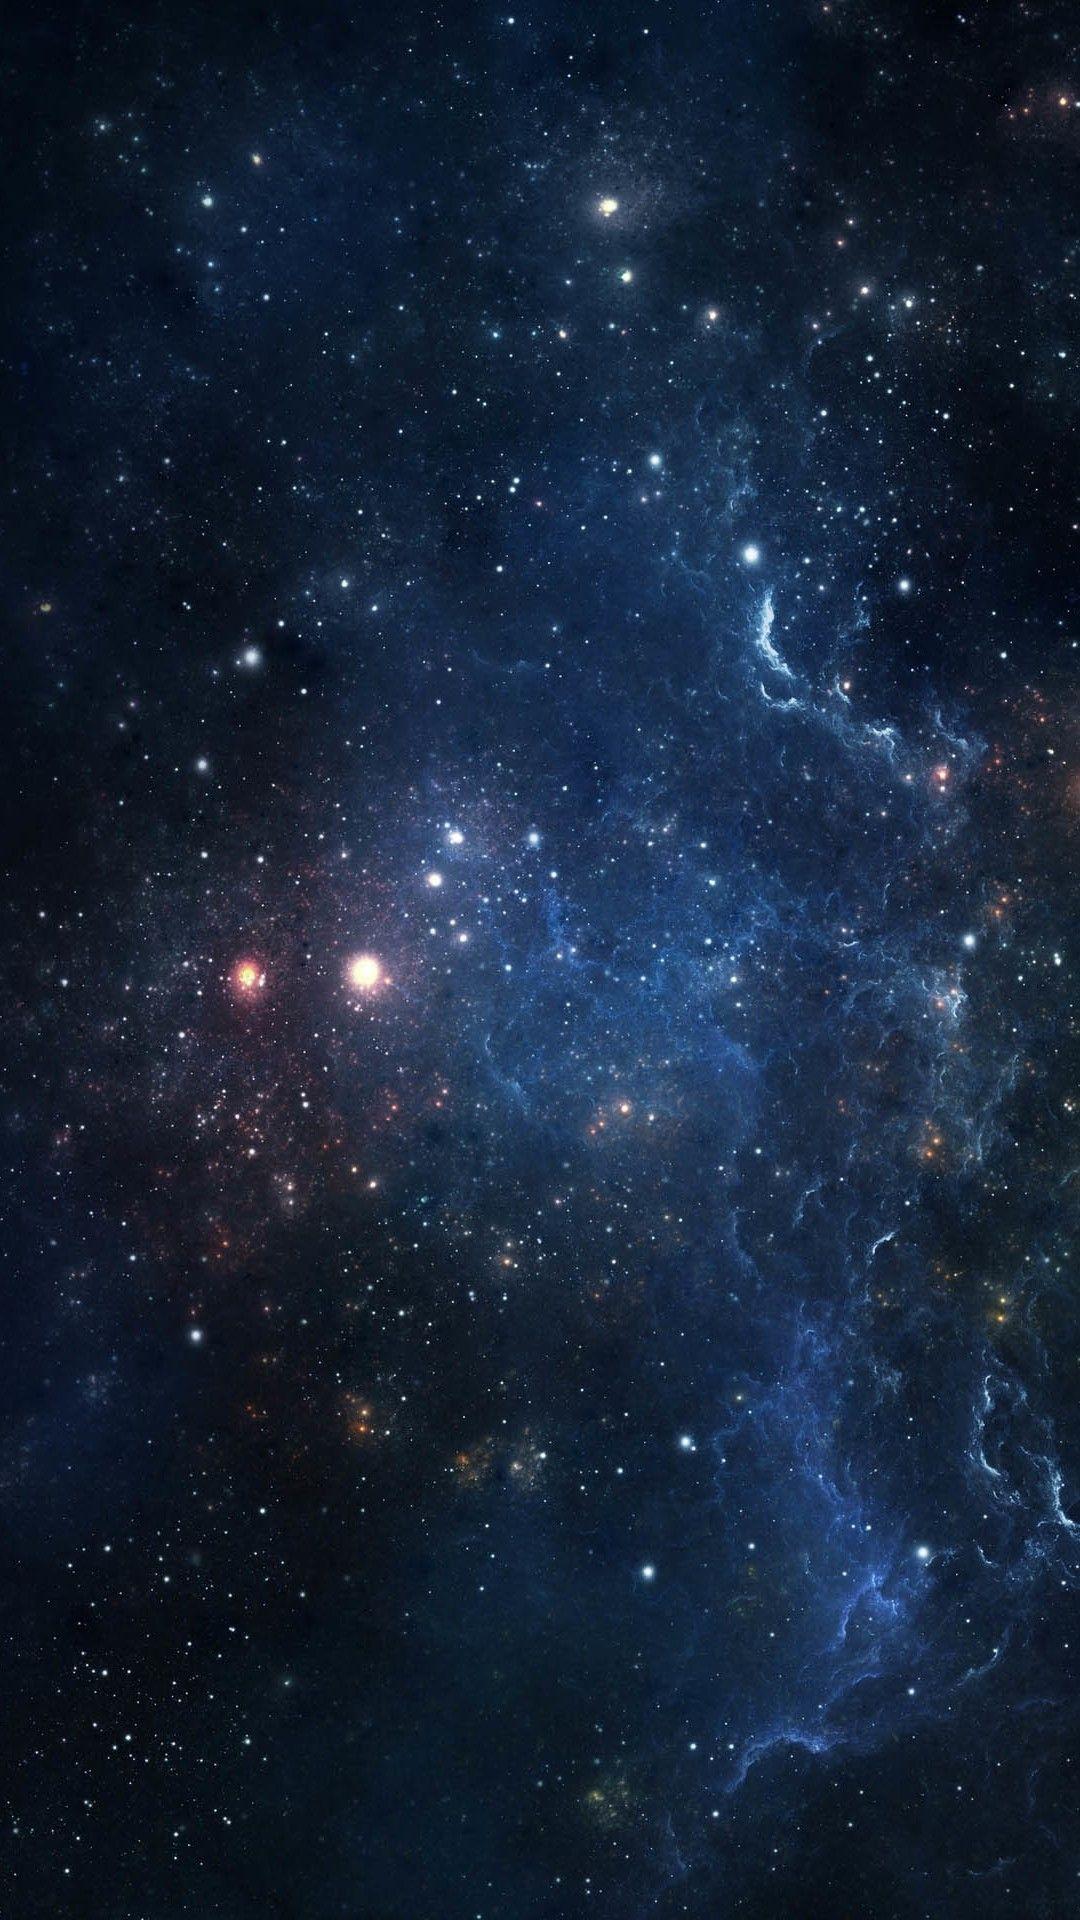 Trong bộ sưu tập hình nền Universe cho iPhone 7 Plus này, bạn sẽ được nhìn thấy những bức ảnh tuyệt đẹp của các thiên hà, sao chổi và ngôi sao sáng lấp lánh trên bầu trời. Những hình ảnh chân thực này không chỉ đẹp mắt mà còn mang đến cho bạn cảm giác hưng phấn và thích thú trong mỗi lần sử dụng điện thoại.